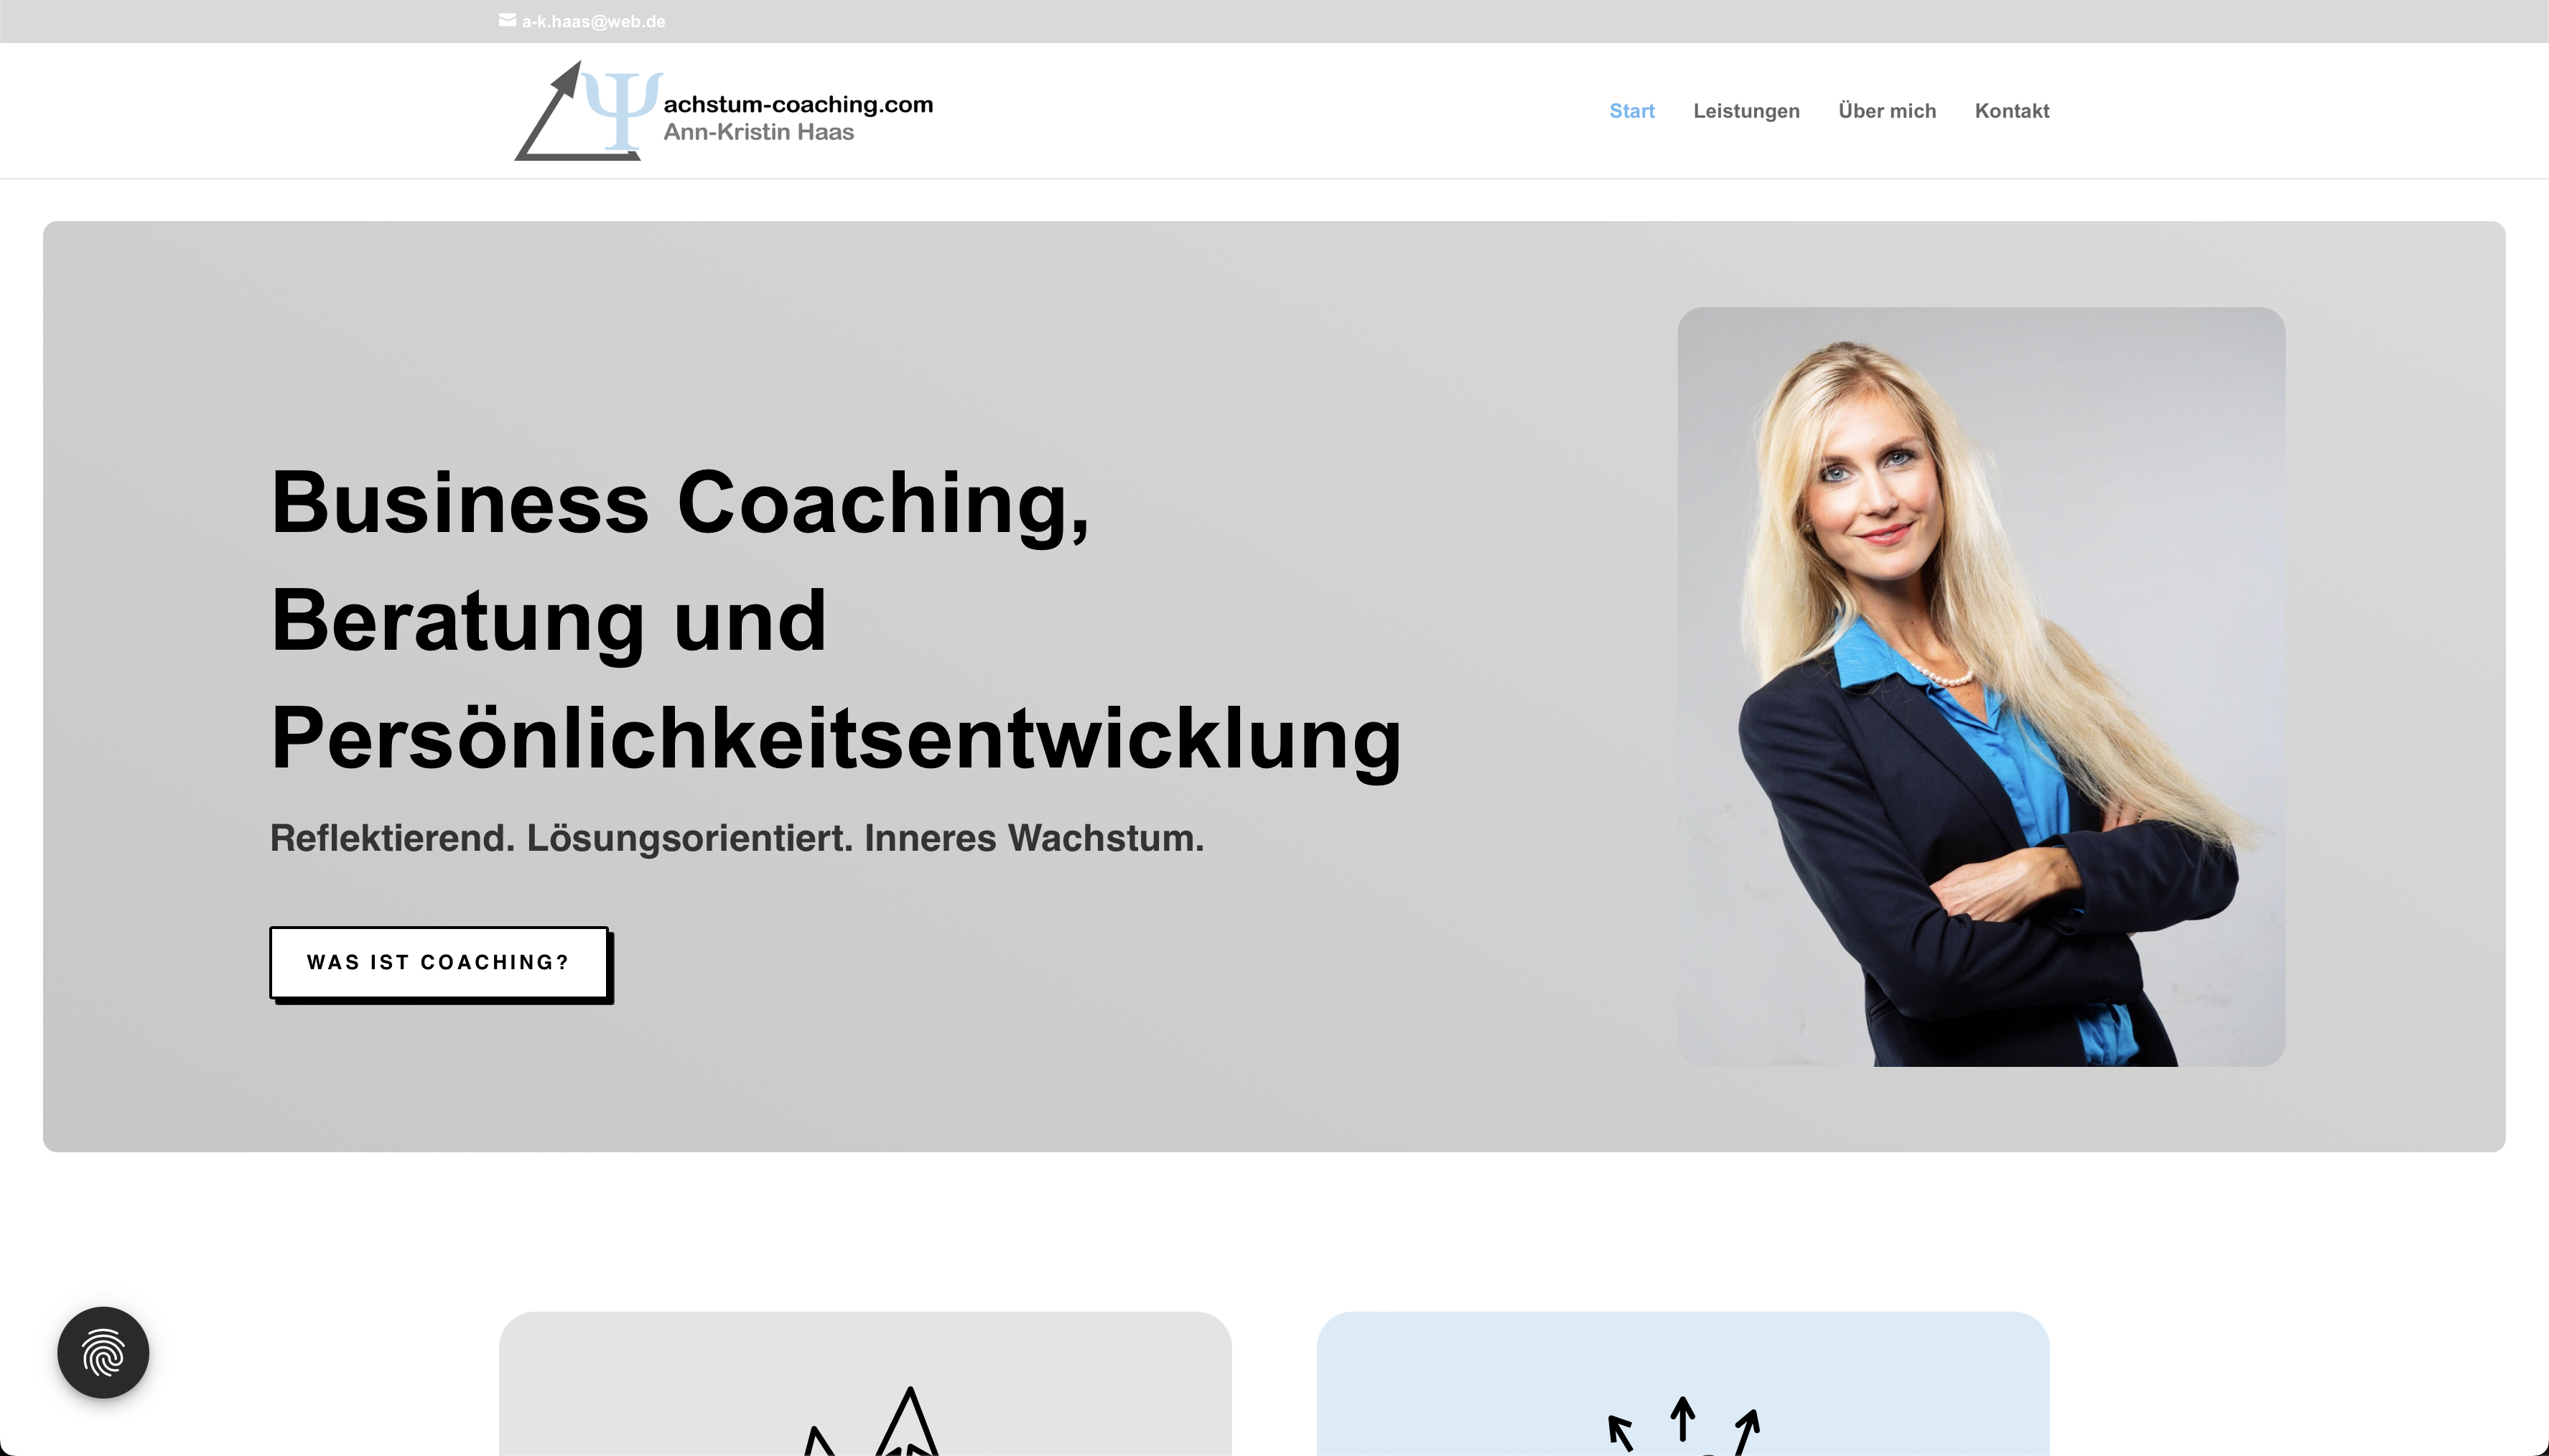 wachstum-coaching.com - Ann-Kristin Haas